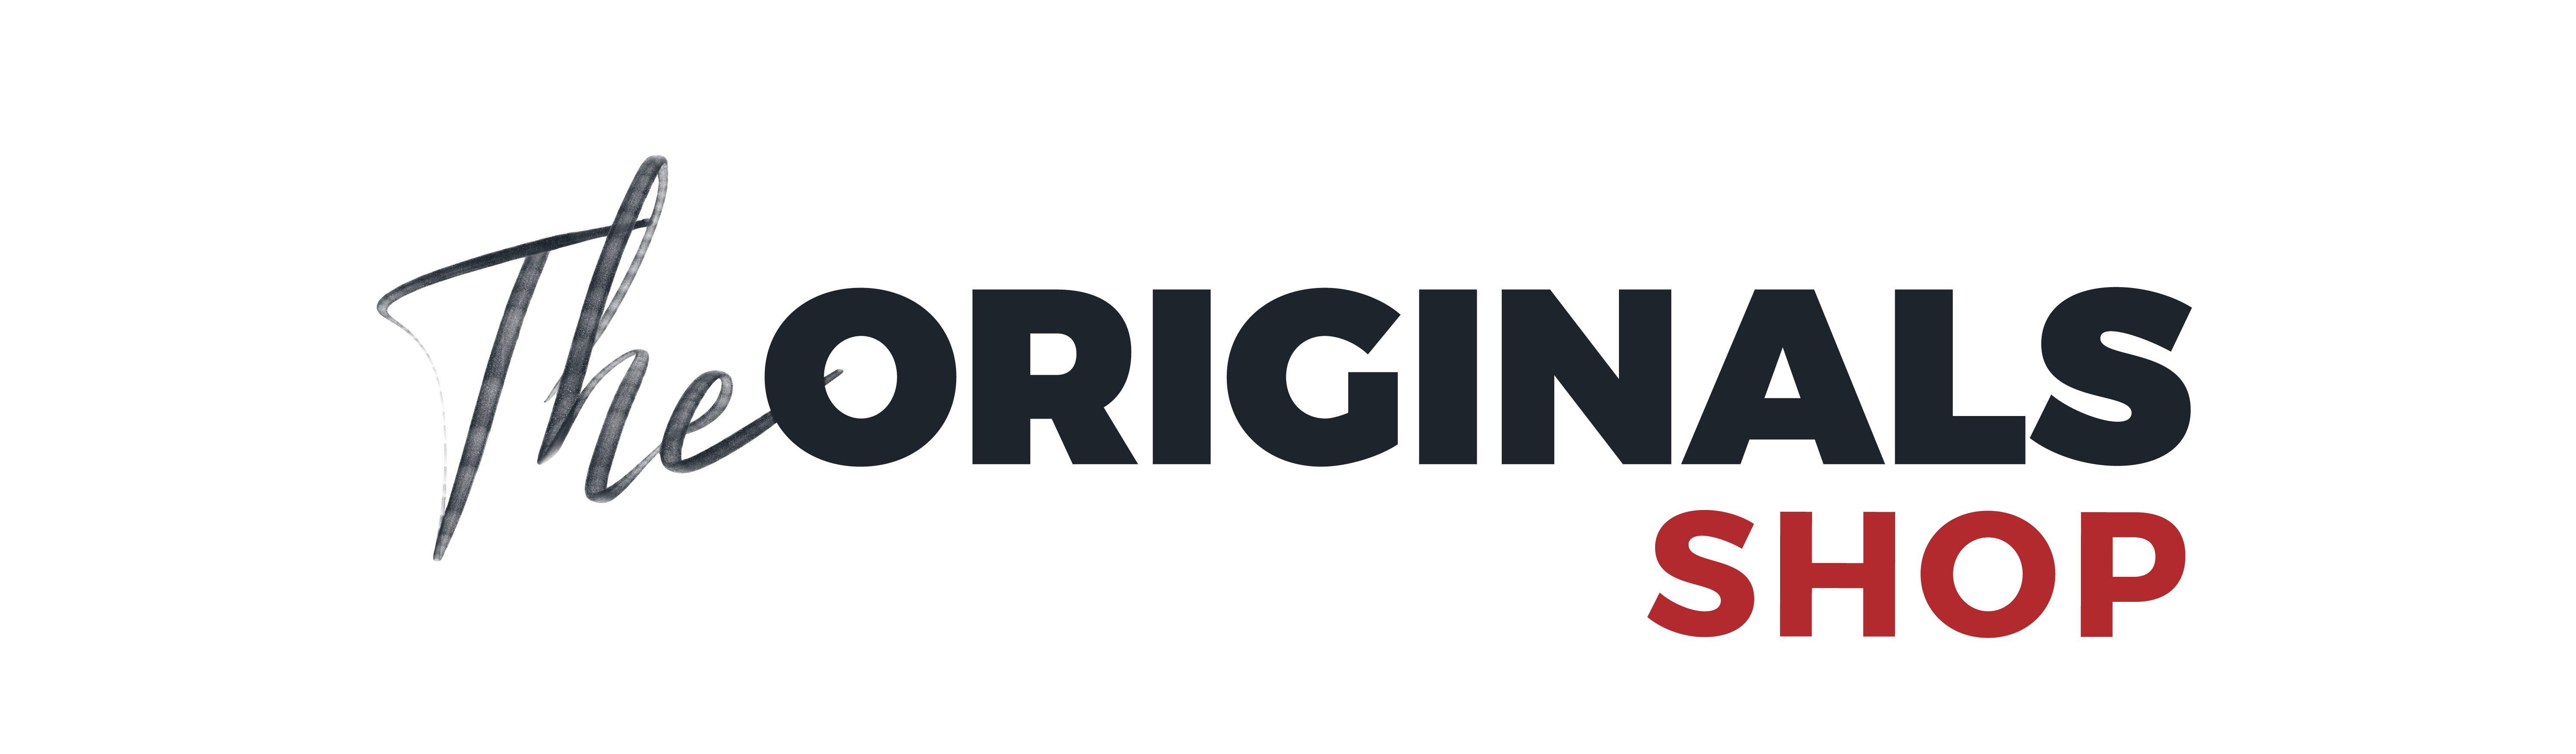 Logo originals